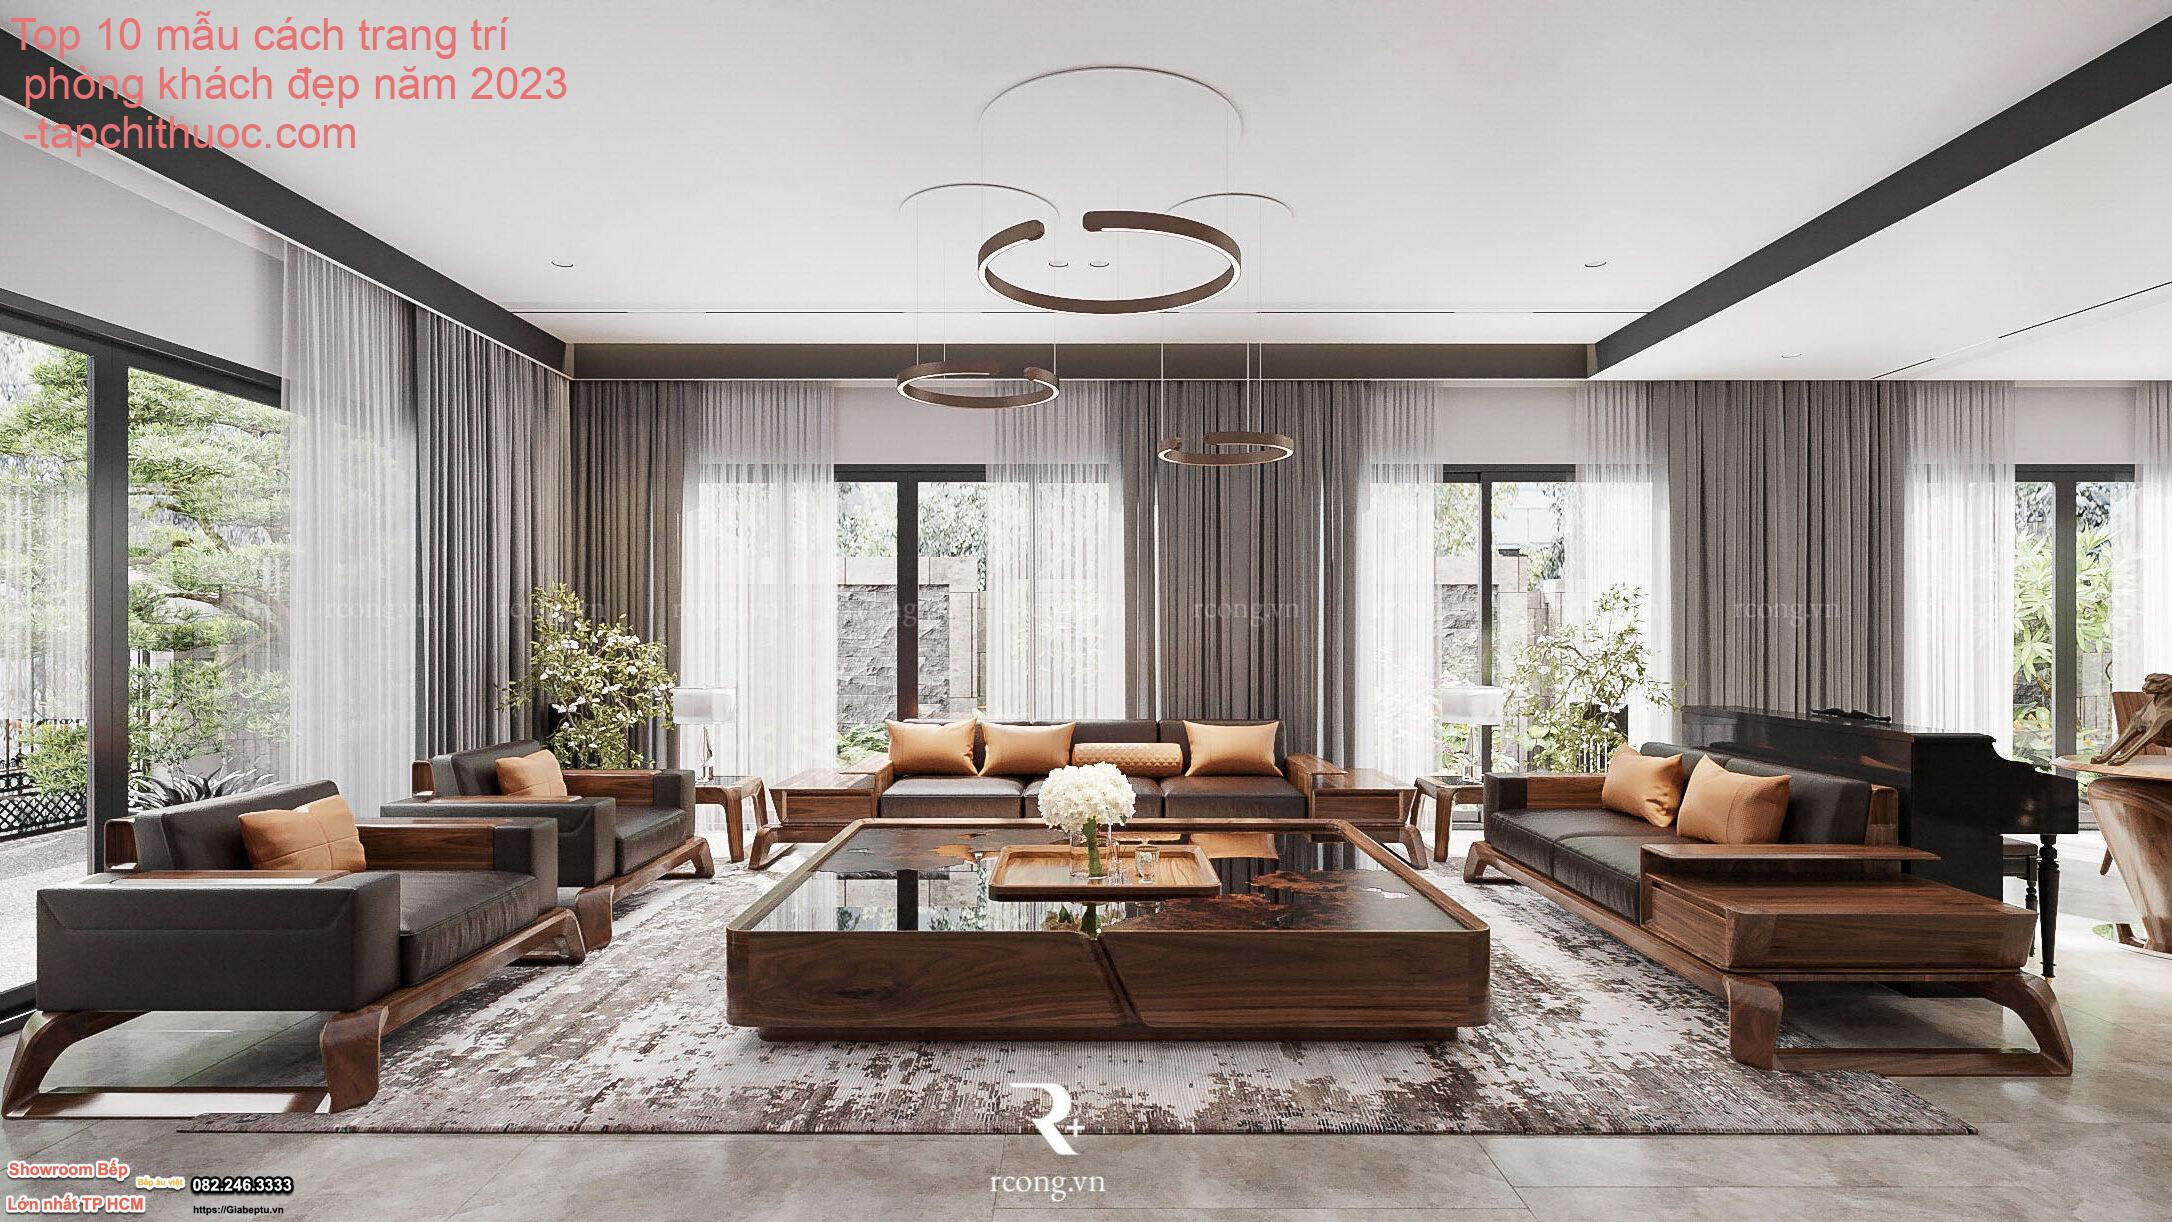 Top 10 mẫu cách trang trí phòng khách đẹp năm 2023